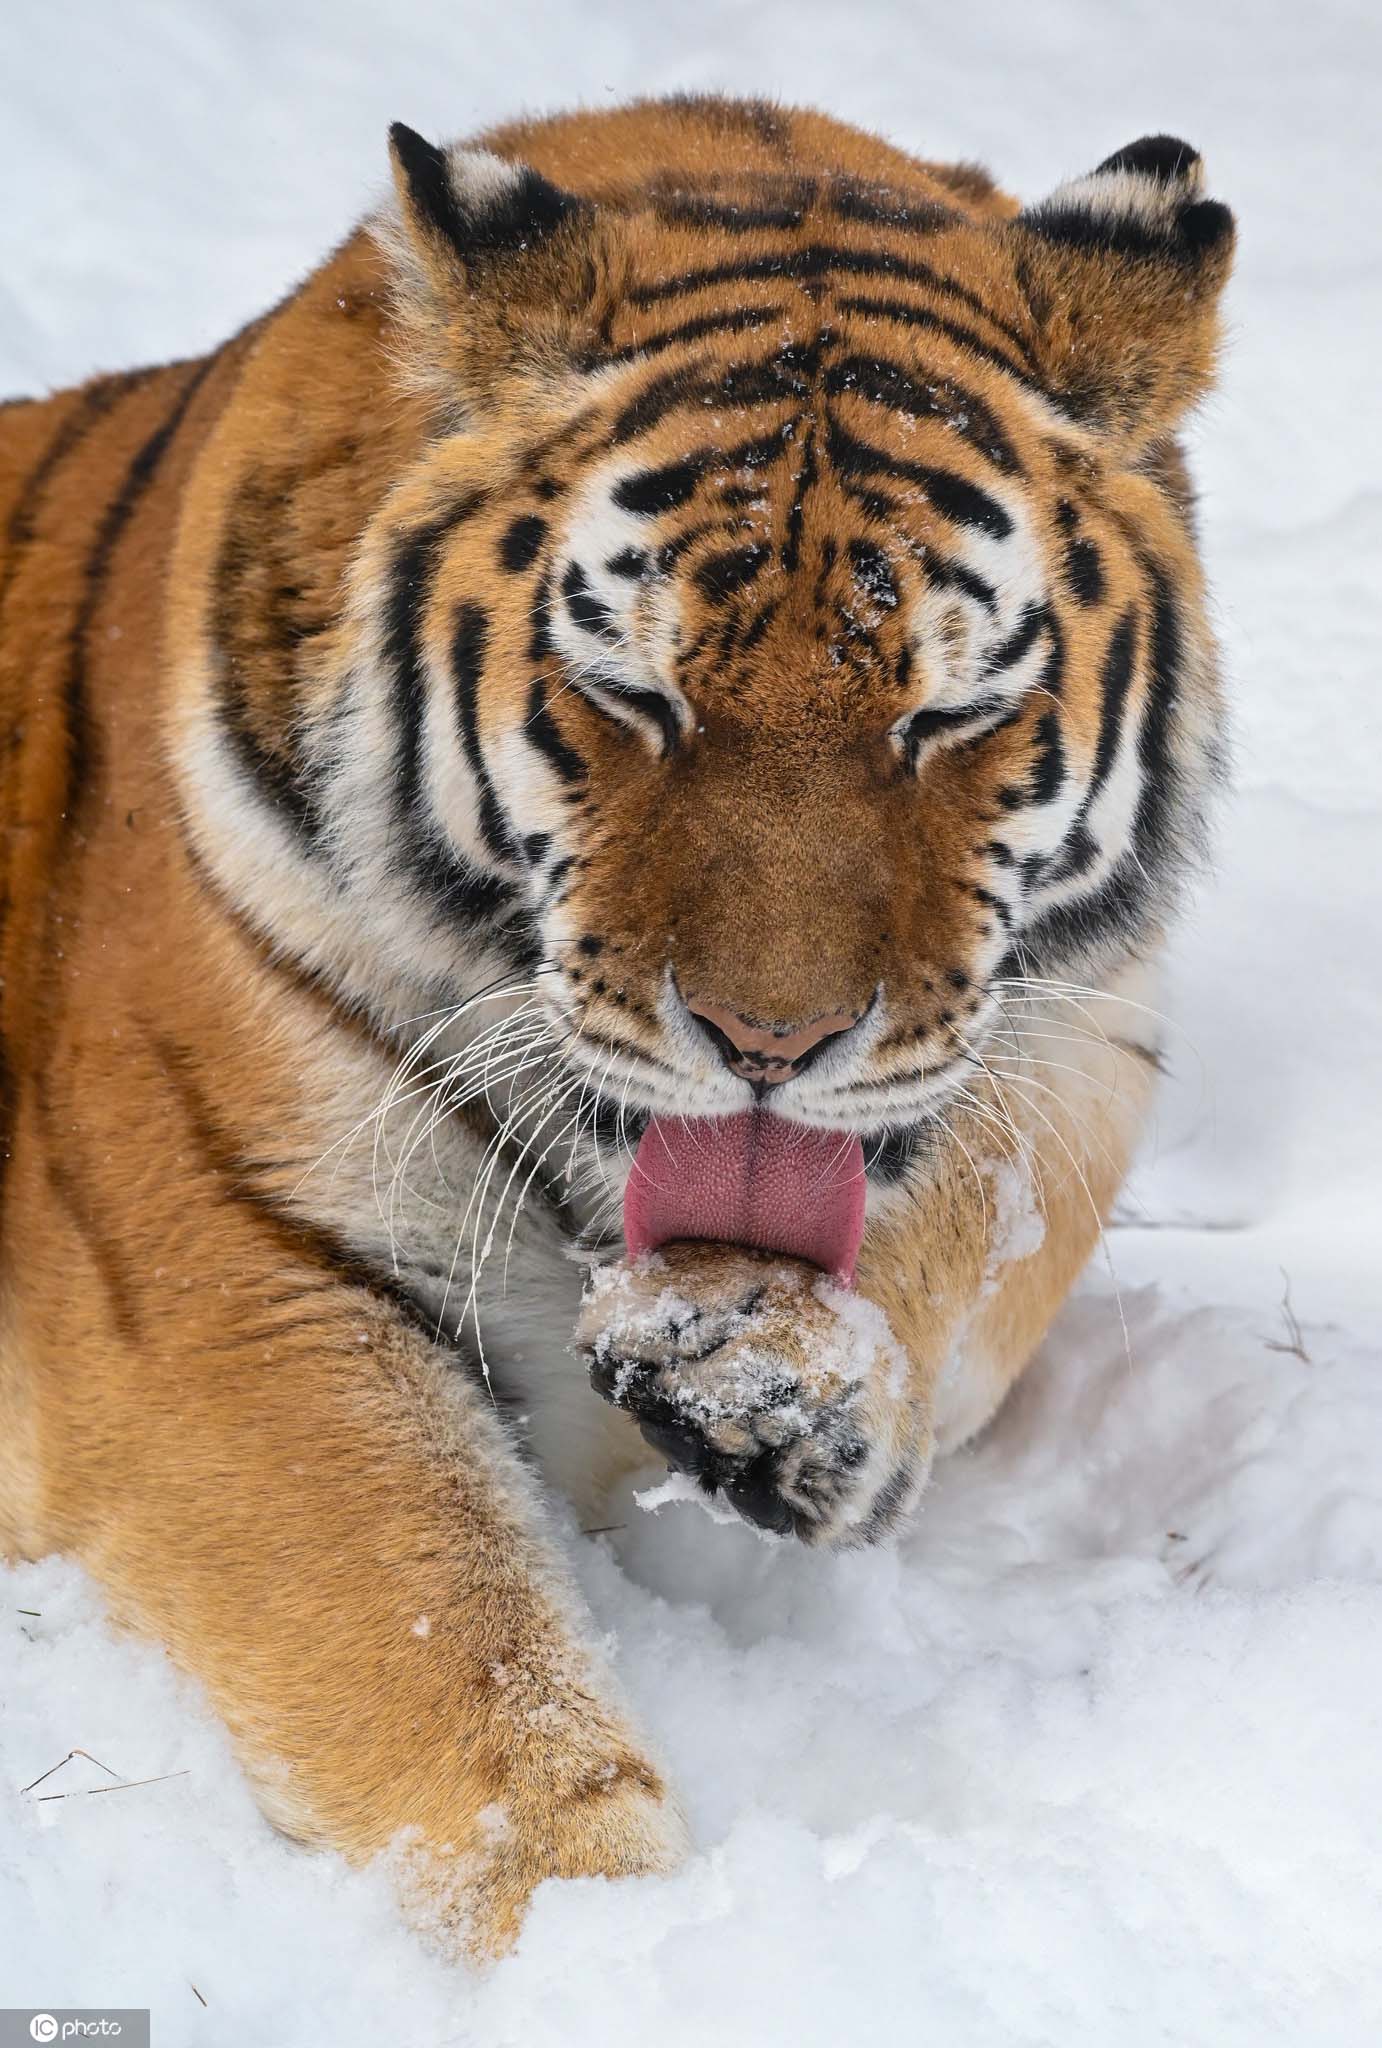 德国动物园西伯利亚虎雪中展露霸气